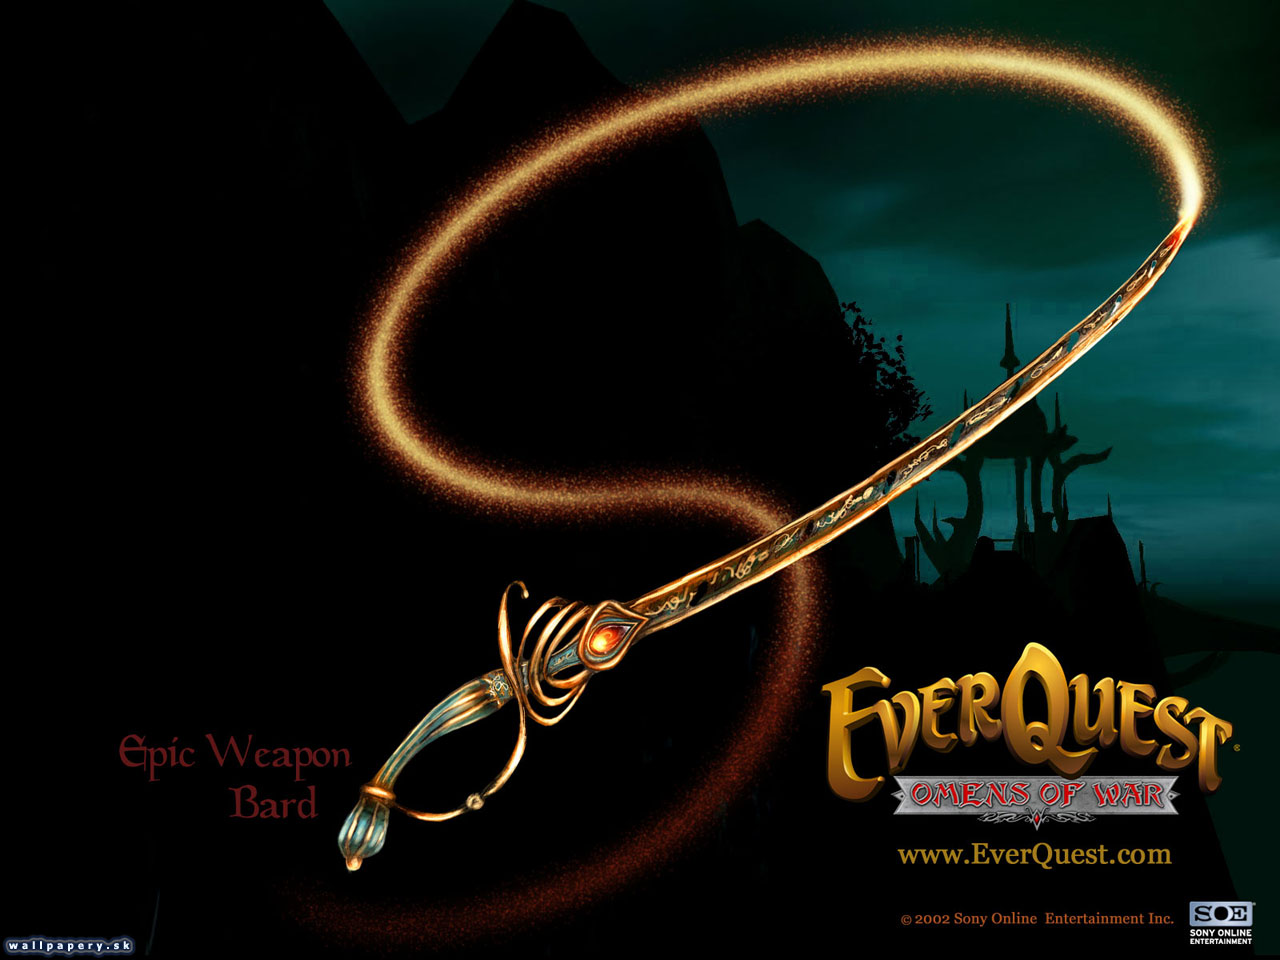 EverQuest: Omens of War - wallpaper 4